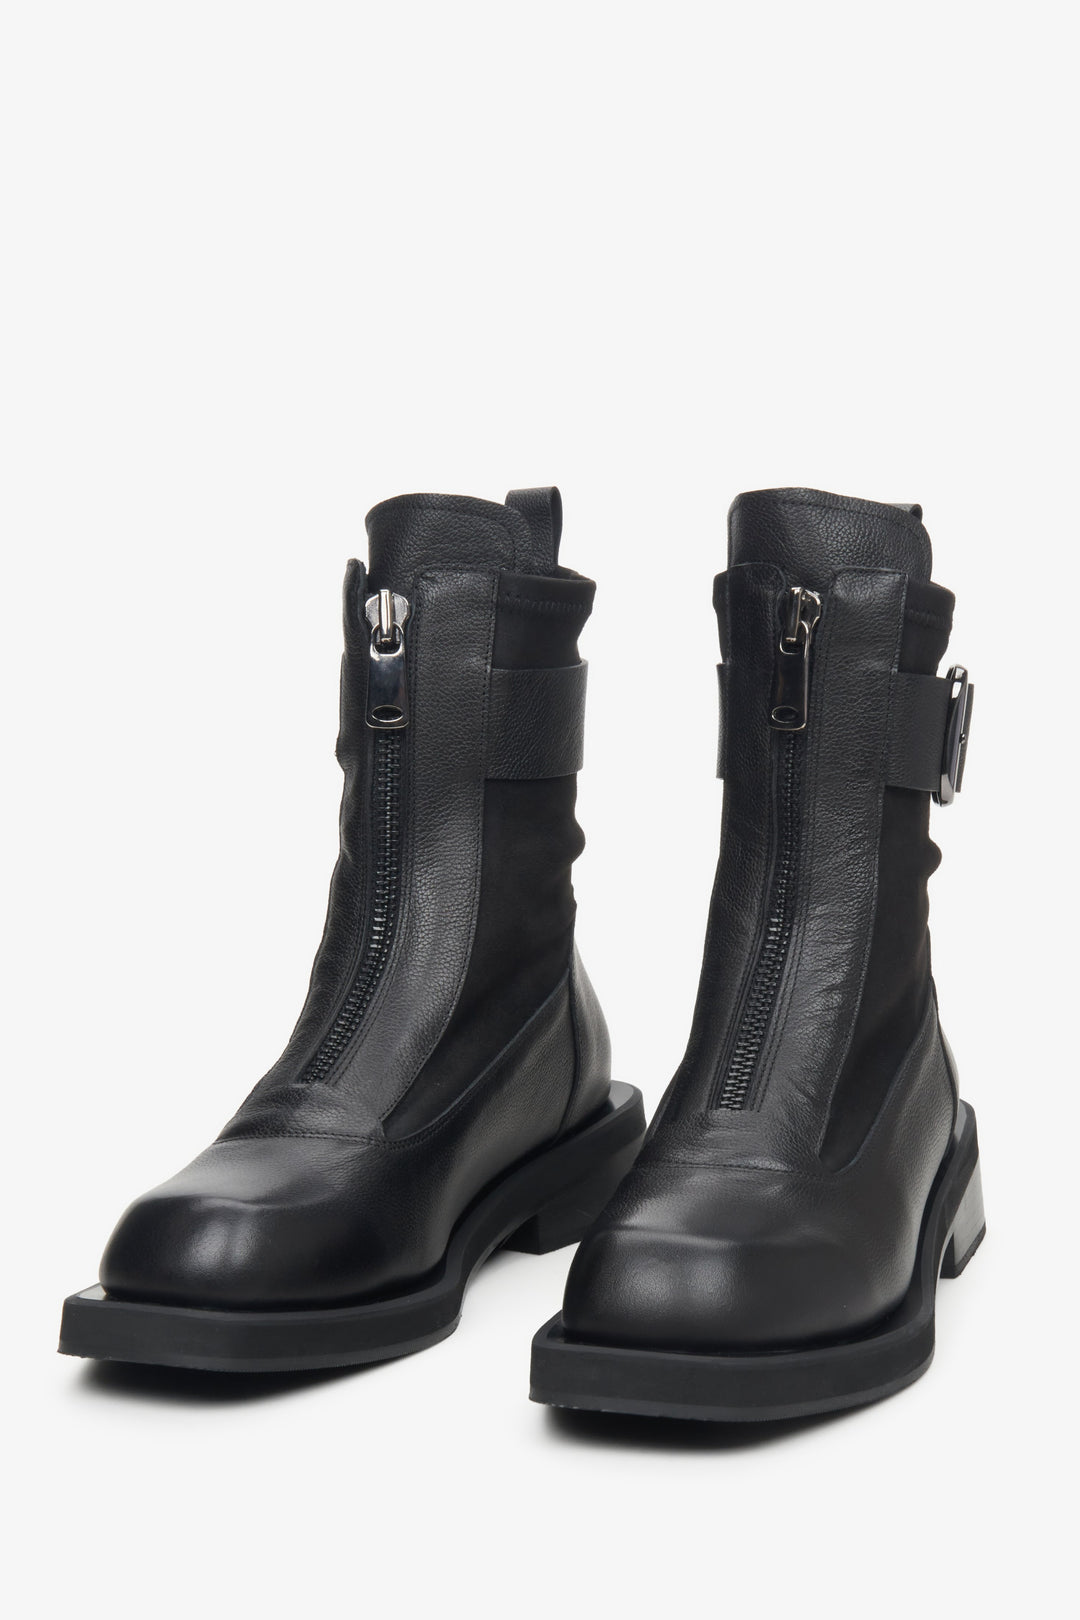 Botki damskie czarne z elastyczną cholewą Estro - zbliżenie na przód butów.